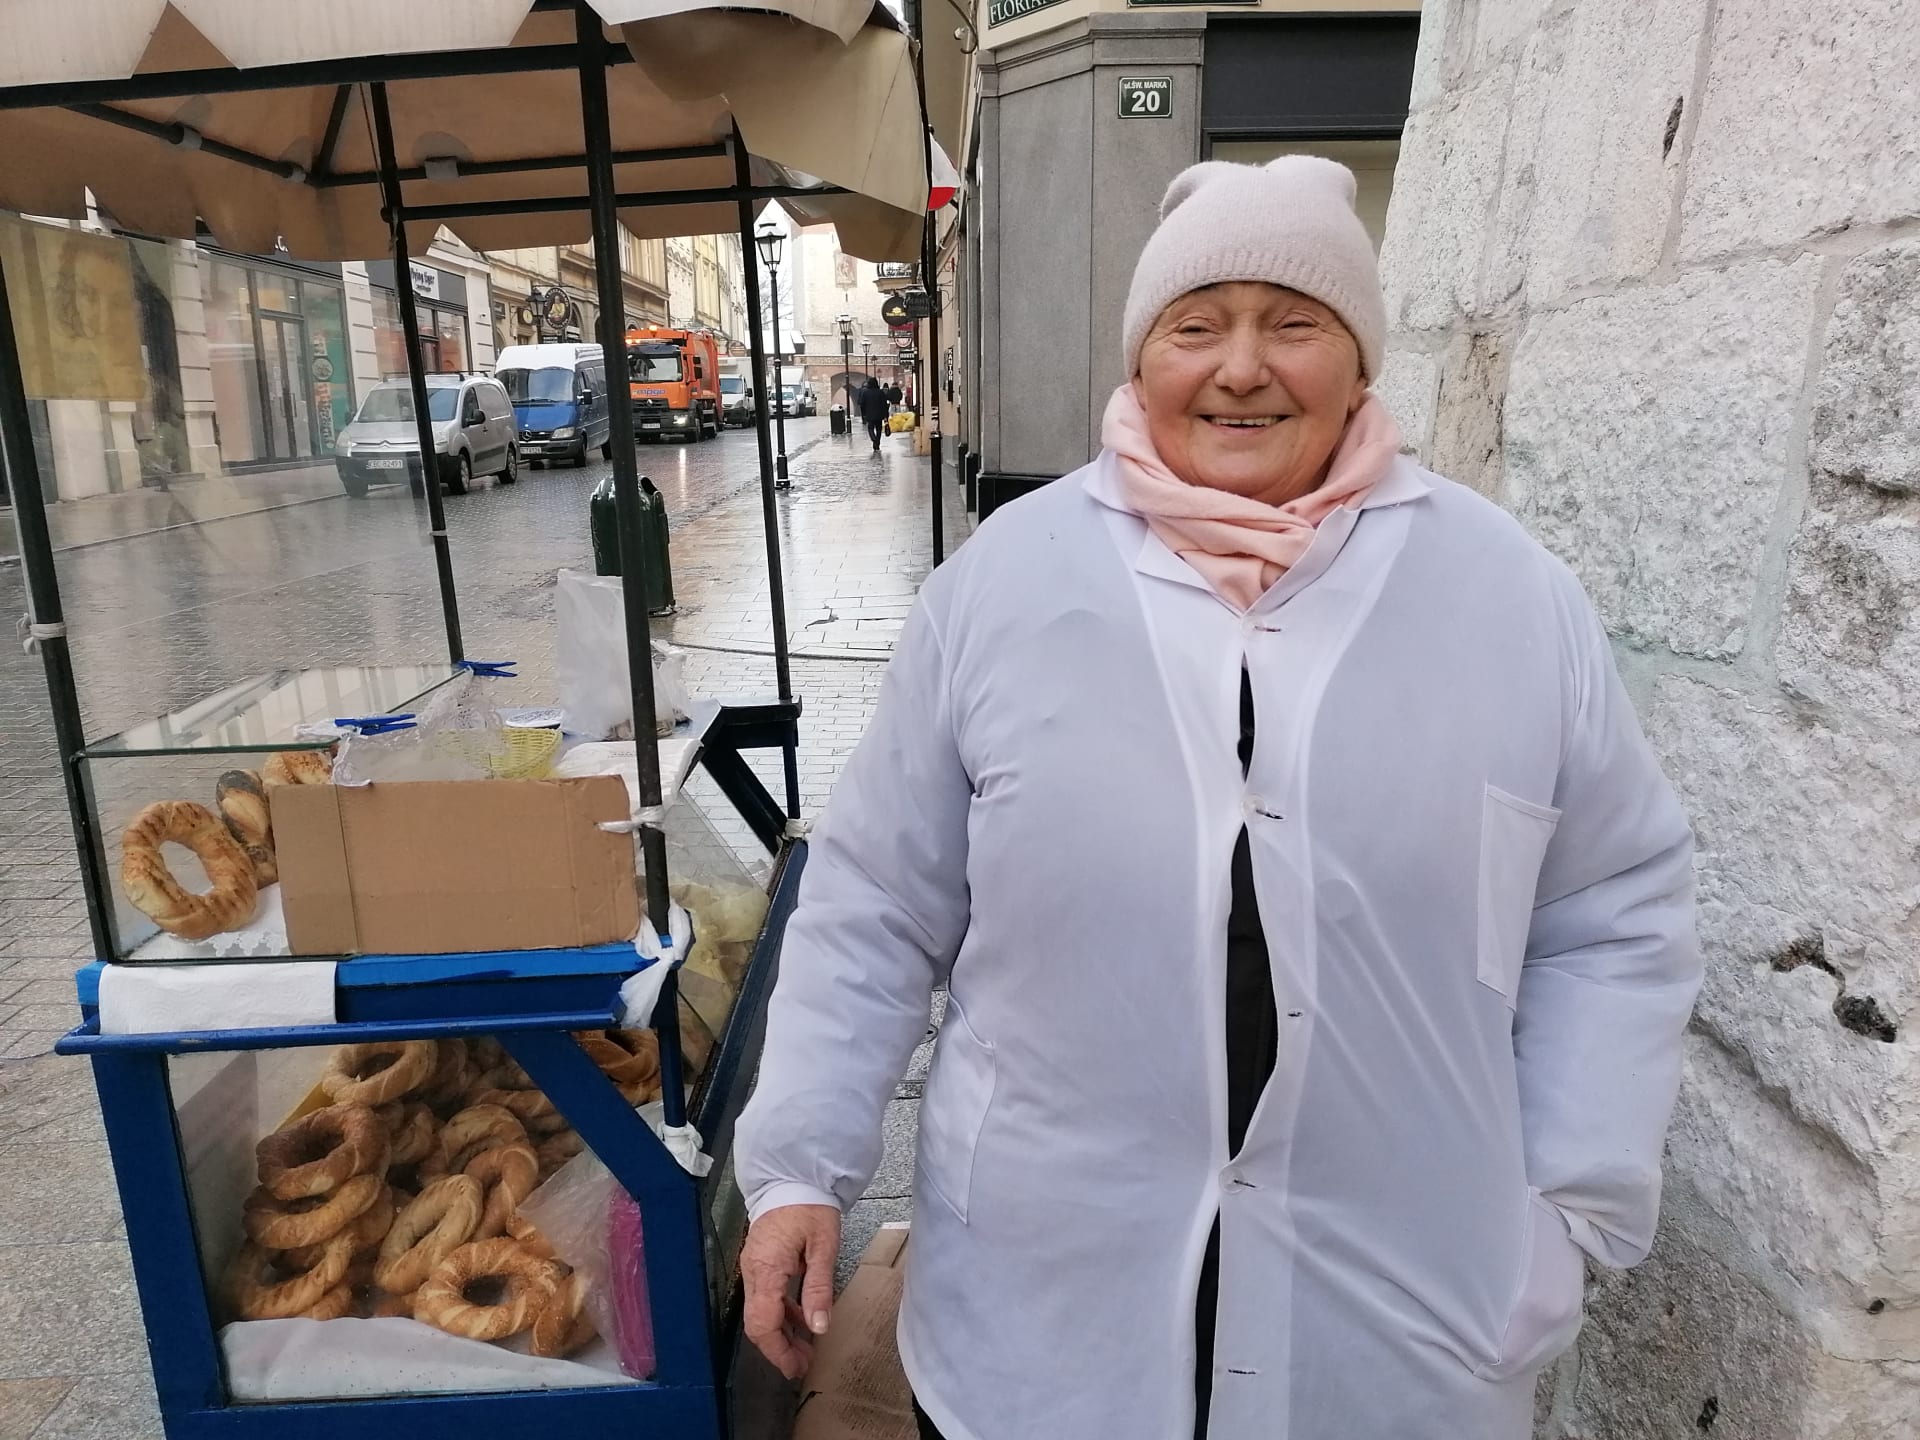 Prodavačka tradičního krakovského pečiva paní Irena očkování odmítá. Prý ji před covidem ochrání Bůh.